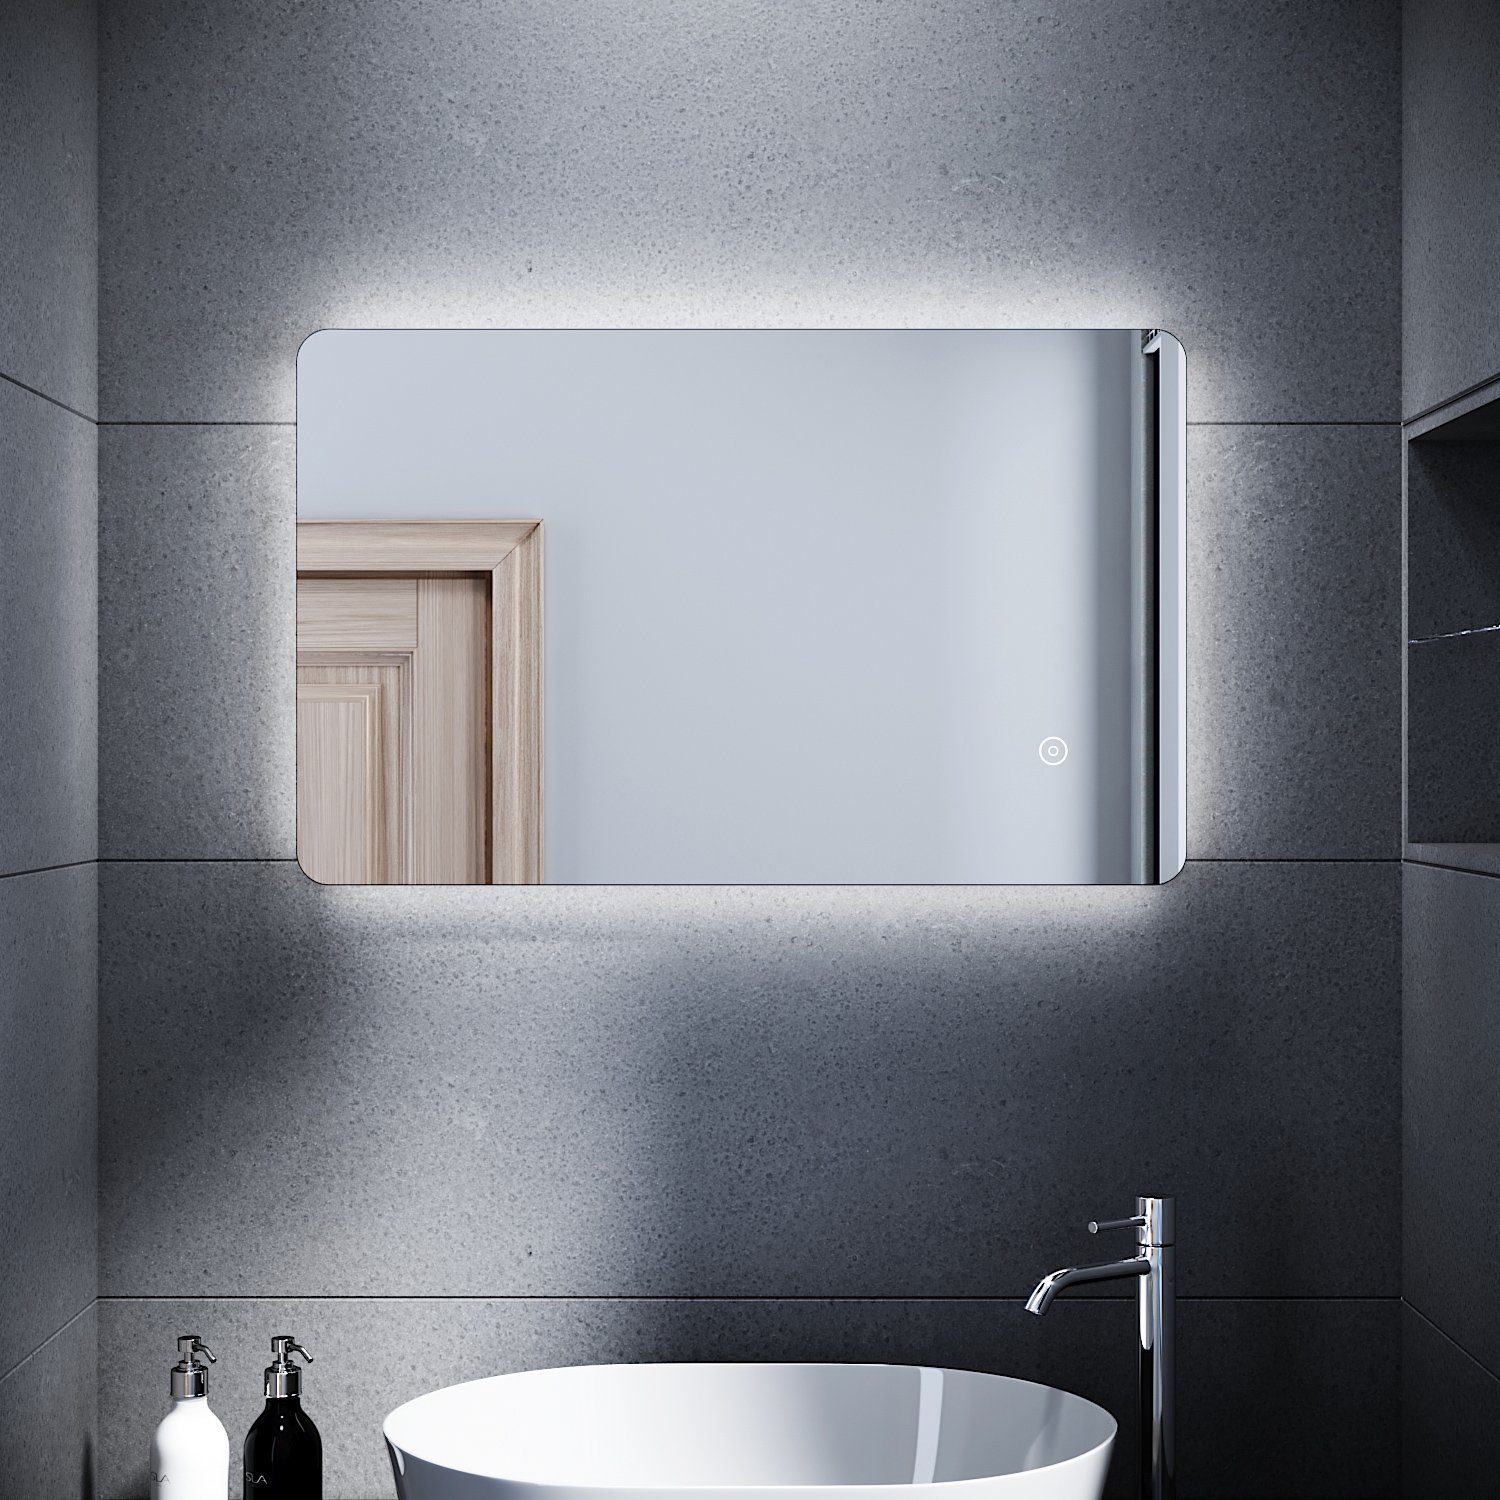 SONNI Badspiegel Badspiegel mit Beleuchtung 80 x 50cm LED Badpiegel, mit Touch Lichtspiegel kaltweiß Wandspiegel IP44 energiesparend